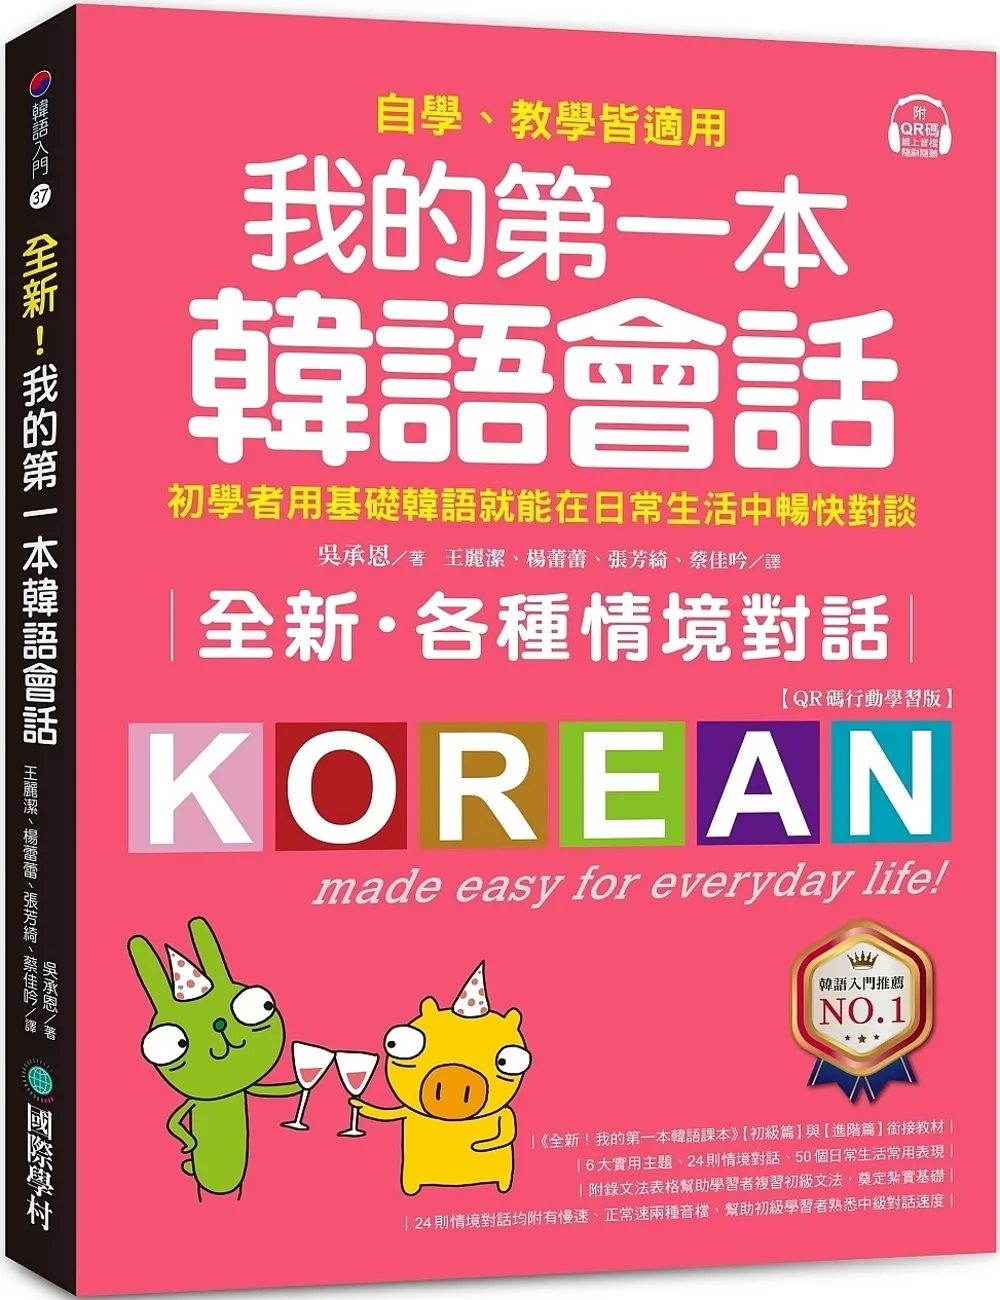 全新！我的第一本韓語會話【QR碼行動學習版】：初學者用基礎韓語就能在日常生活中暢快對談，自學、教學皆適用！